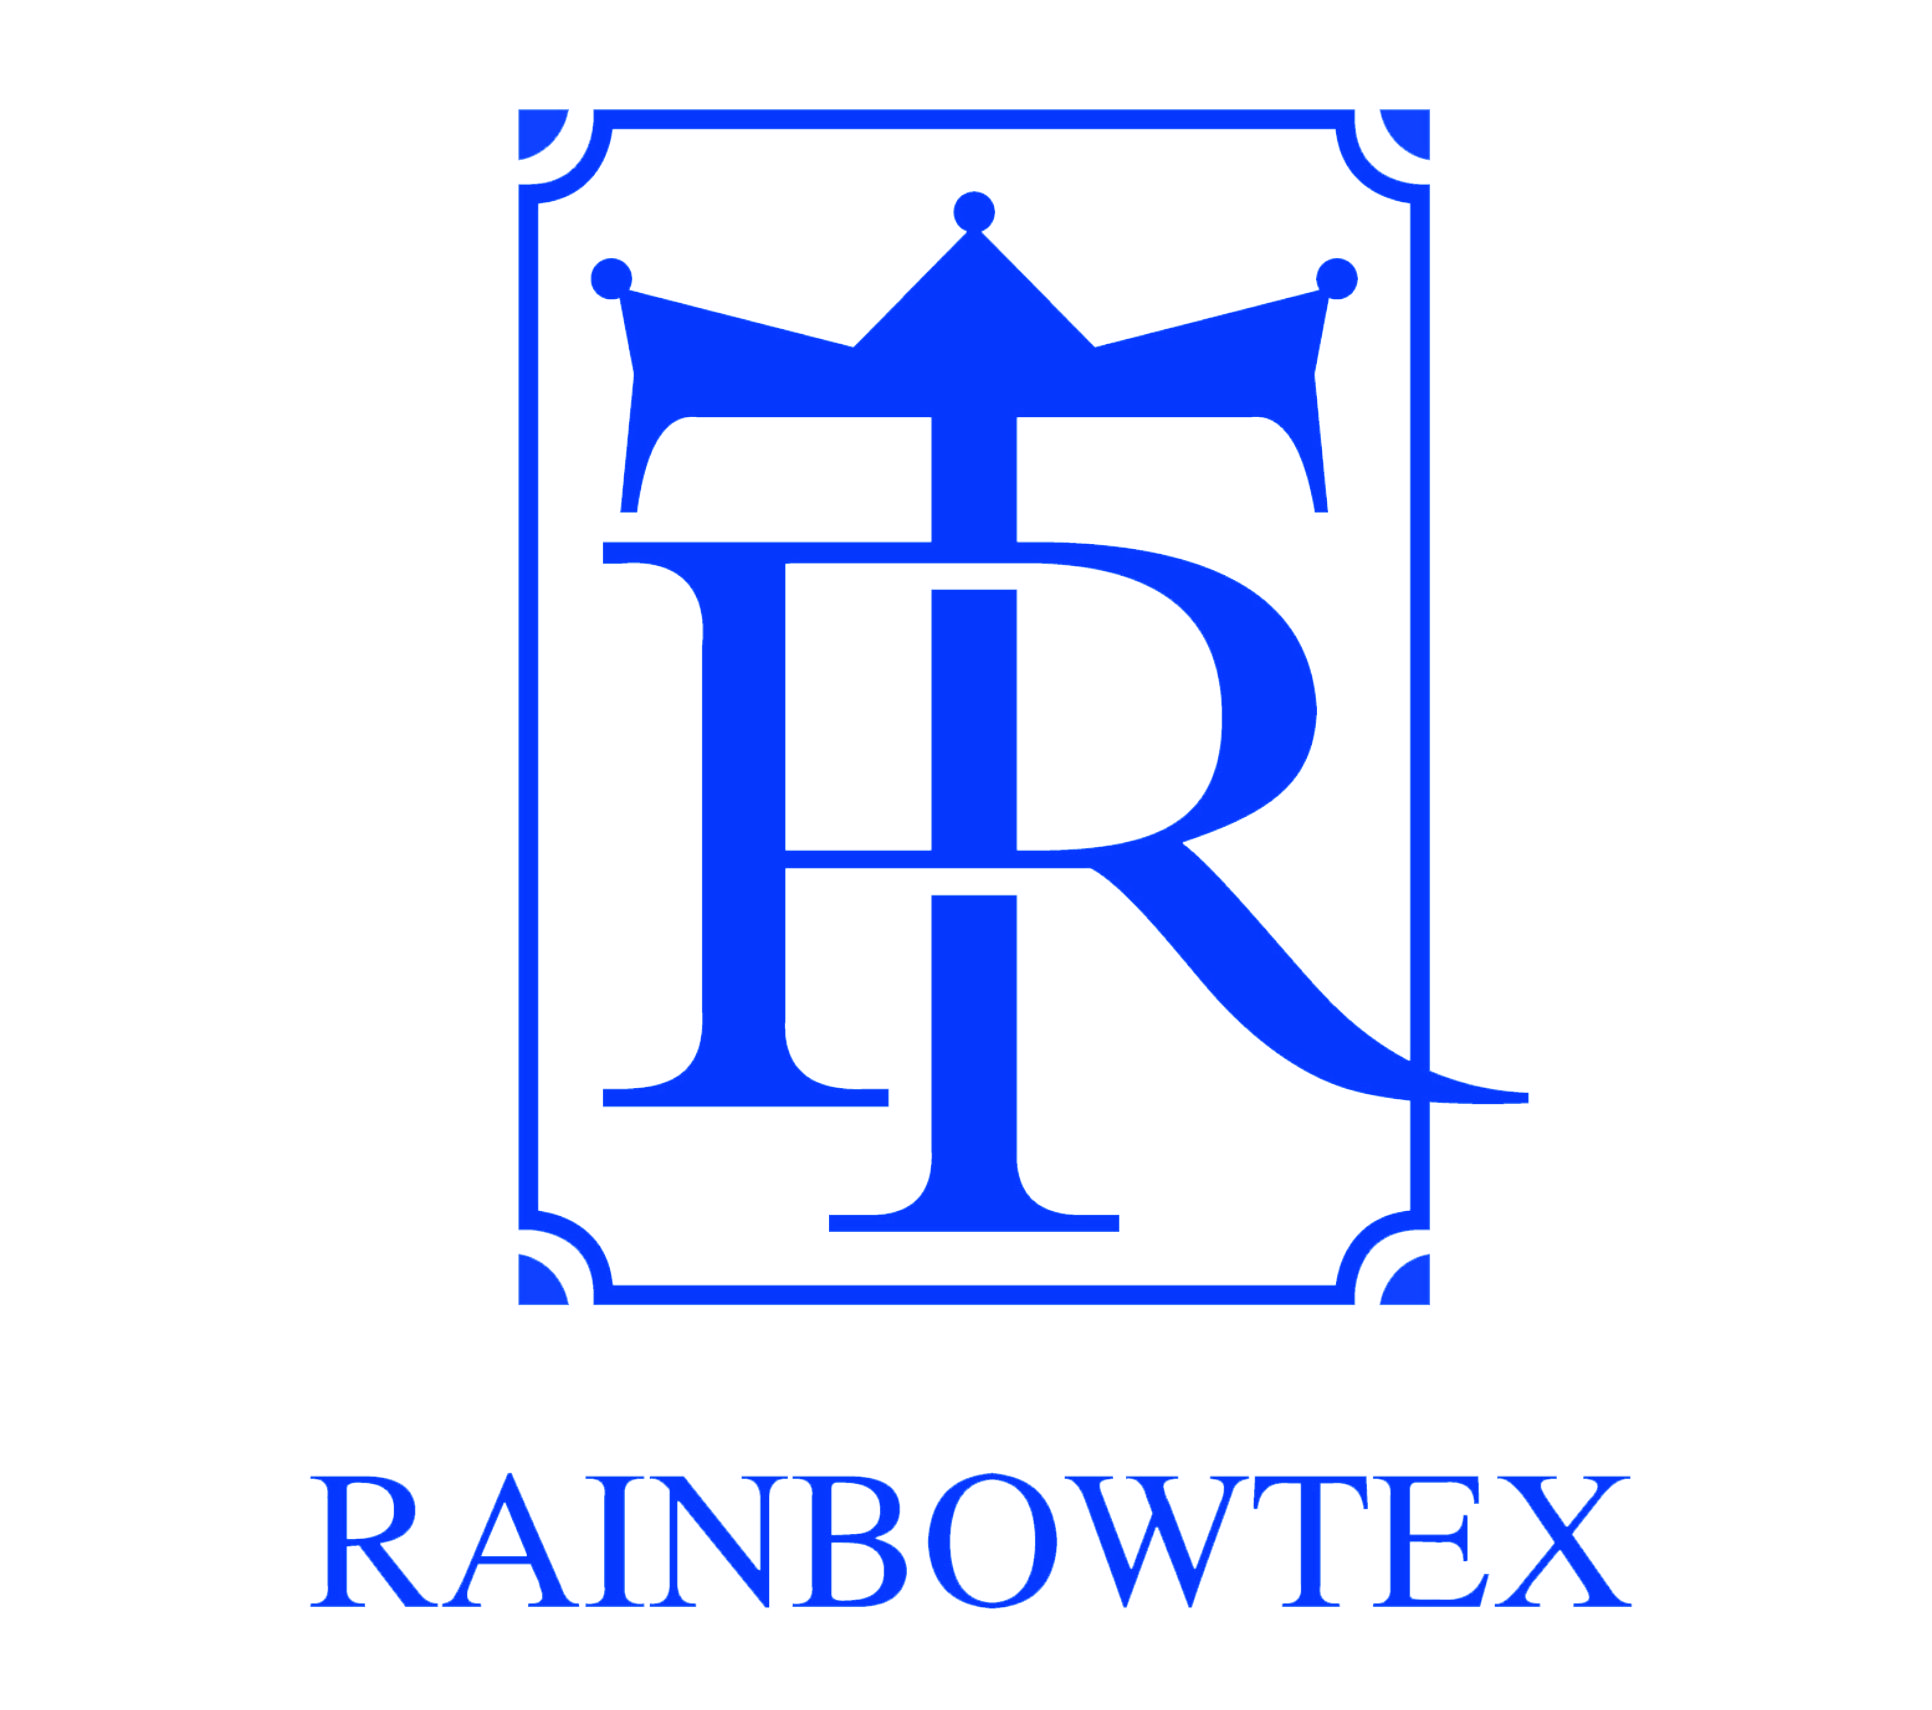 shaoxing rainbowtex import and export co.,ltd.